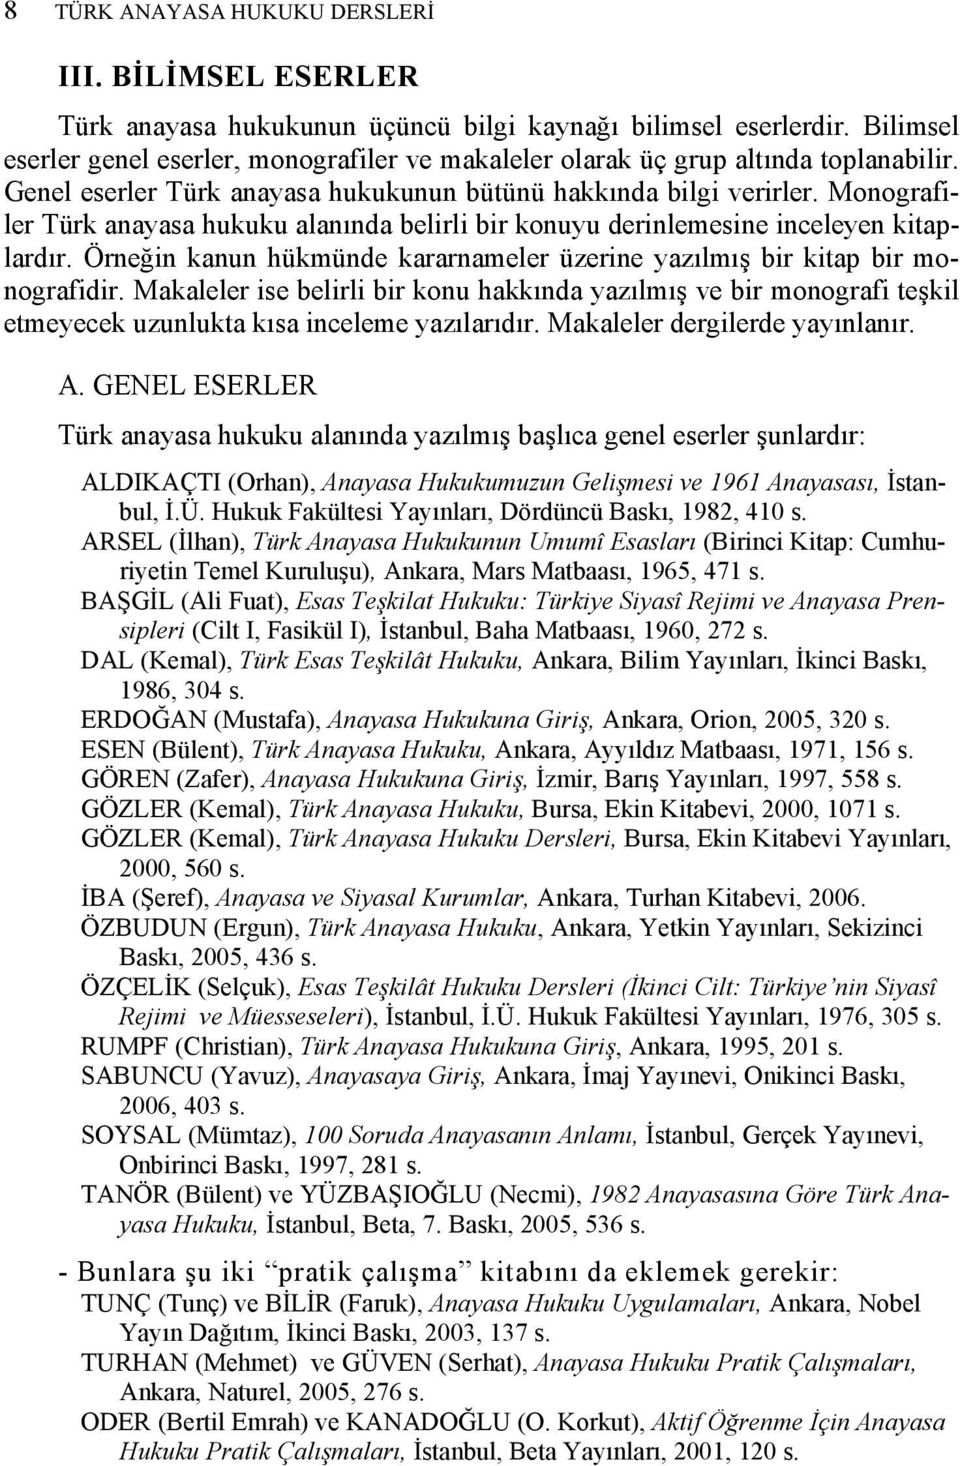 Monografiler Türk anayasa hukuku alanında belirli bir konuyu derinlemesine inceleyen kitaplardır. Örneğin kanun hükmünde kararnameler üzerine yazılmış bir kitap bir monografidir.